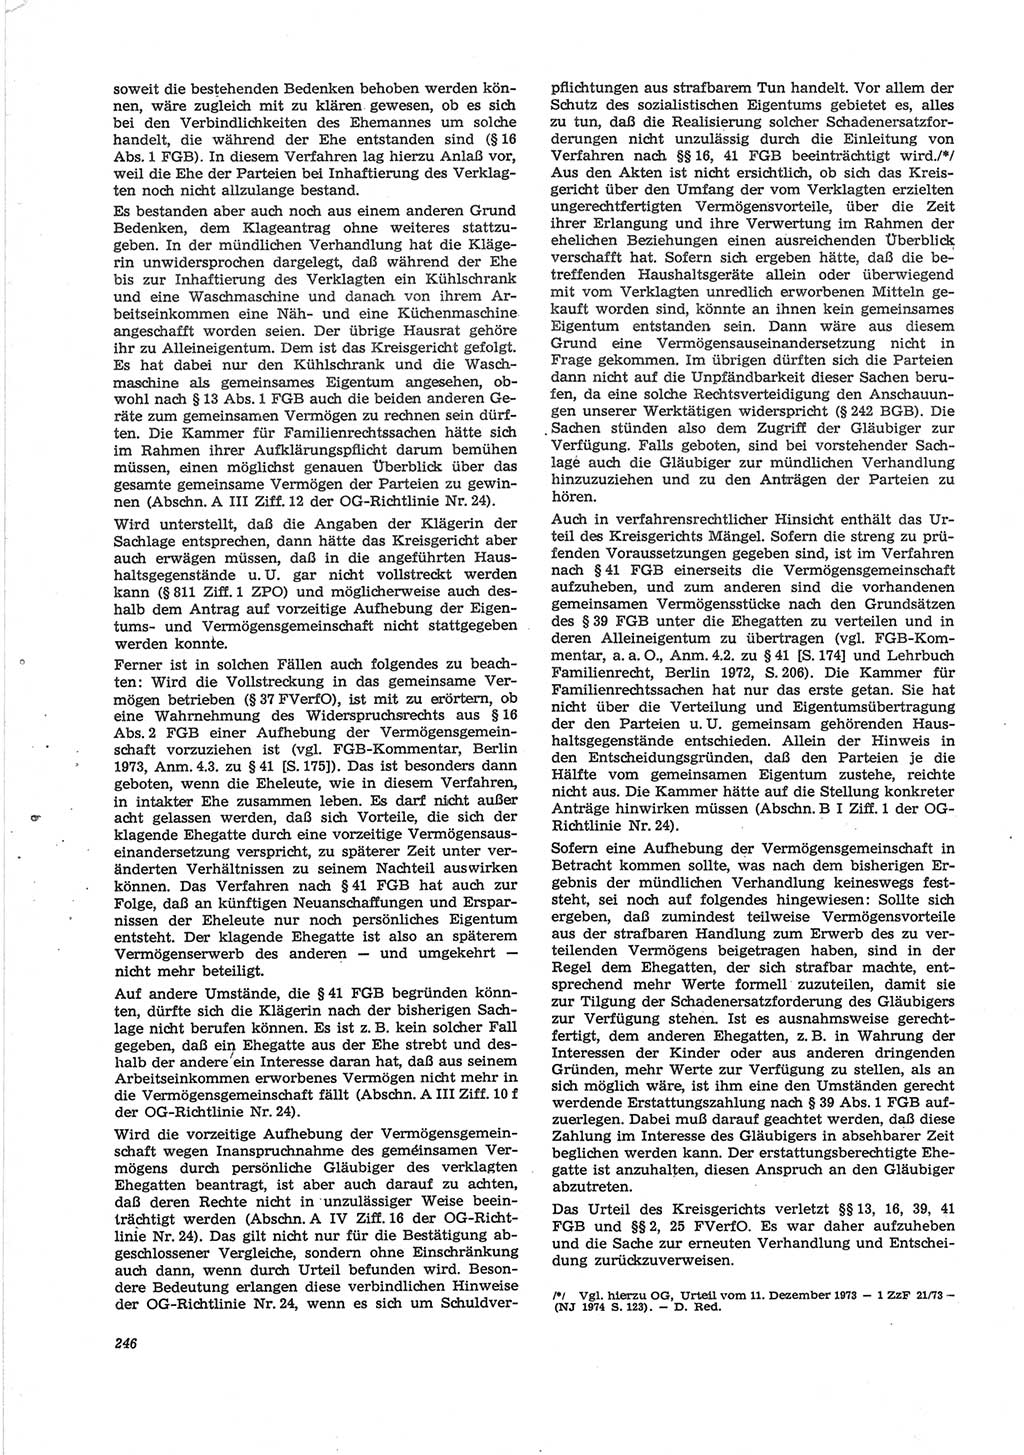 Neue Justiz (NJ), Zeitschrift für Recht und Rechtswissenschaft [Deutsche Demokratische Republik (DDR)], 28. Jahrgang 1974, Seite 246 (NJ DDR 1974, S. 246)